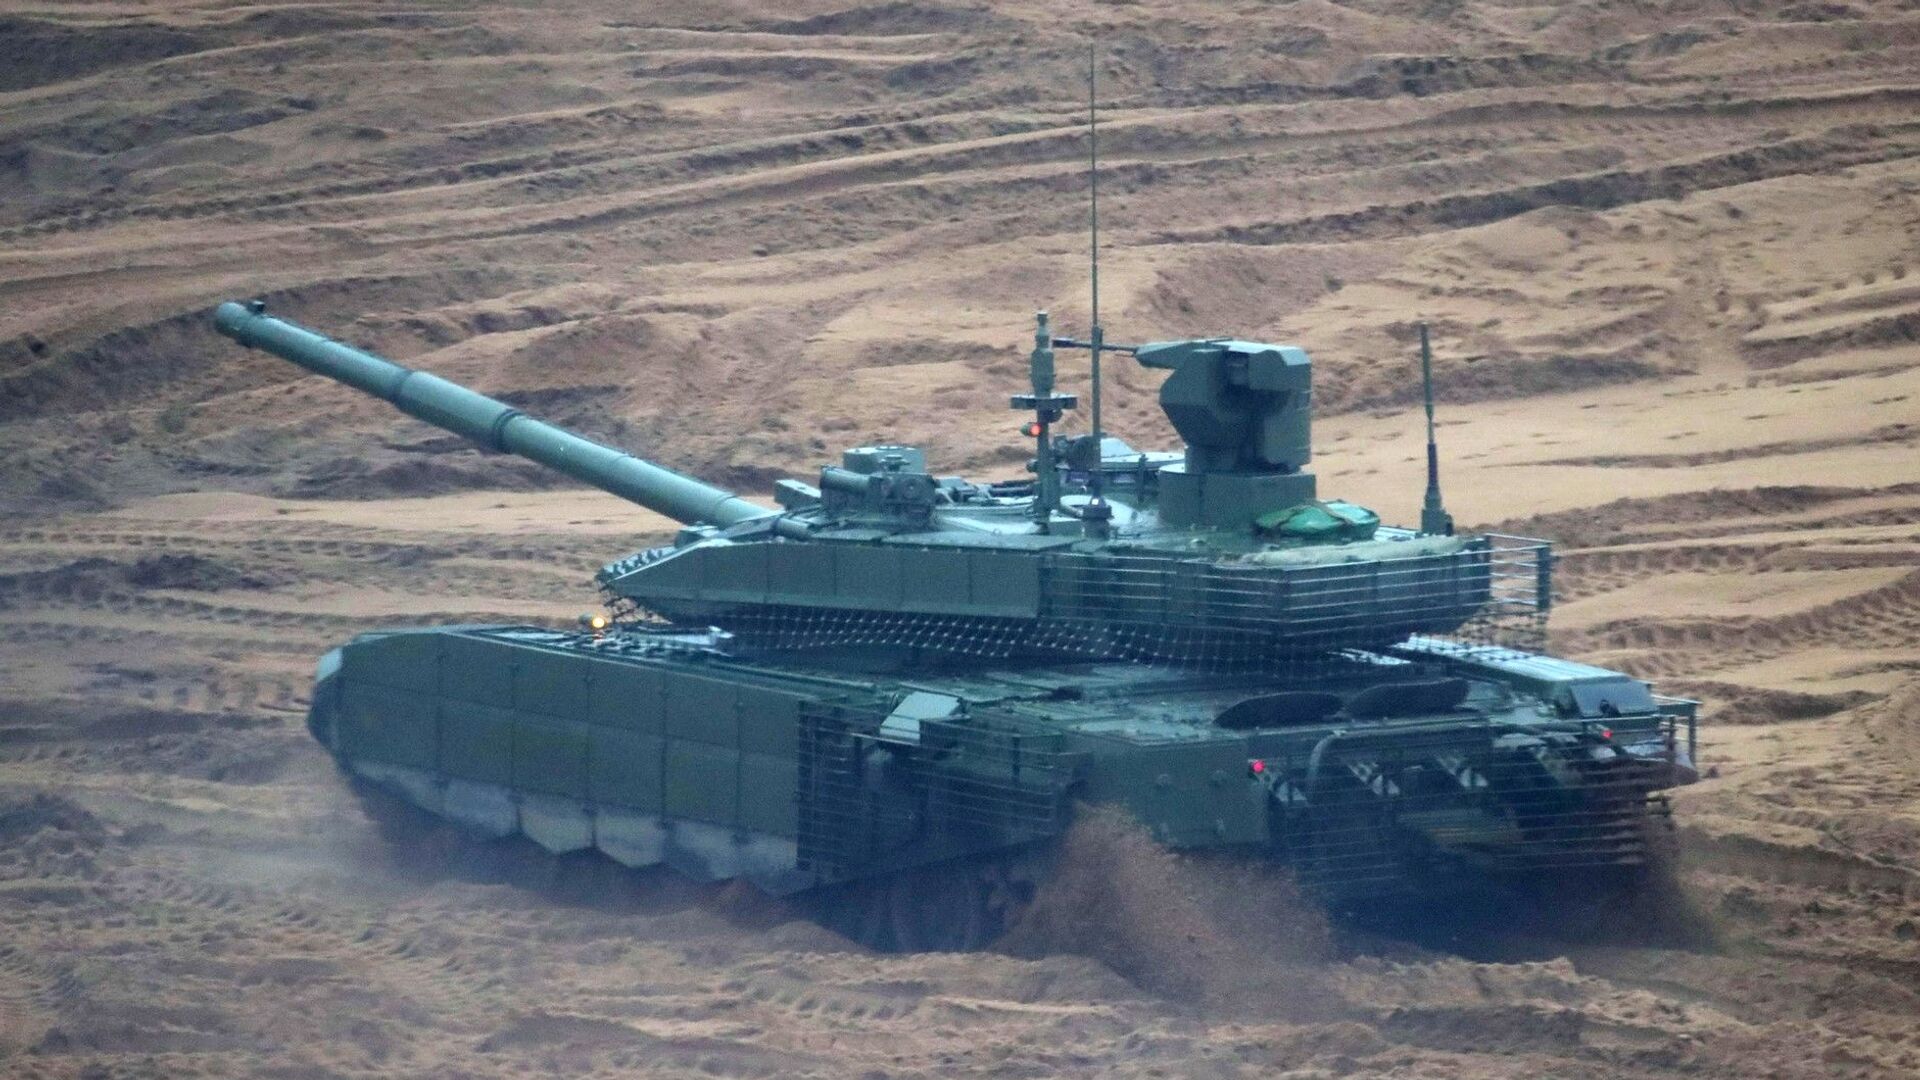  T-90M坦克 - 彩神网卫星通讯社, 1920, 04.01.2022